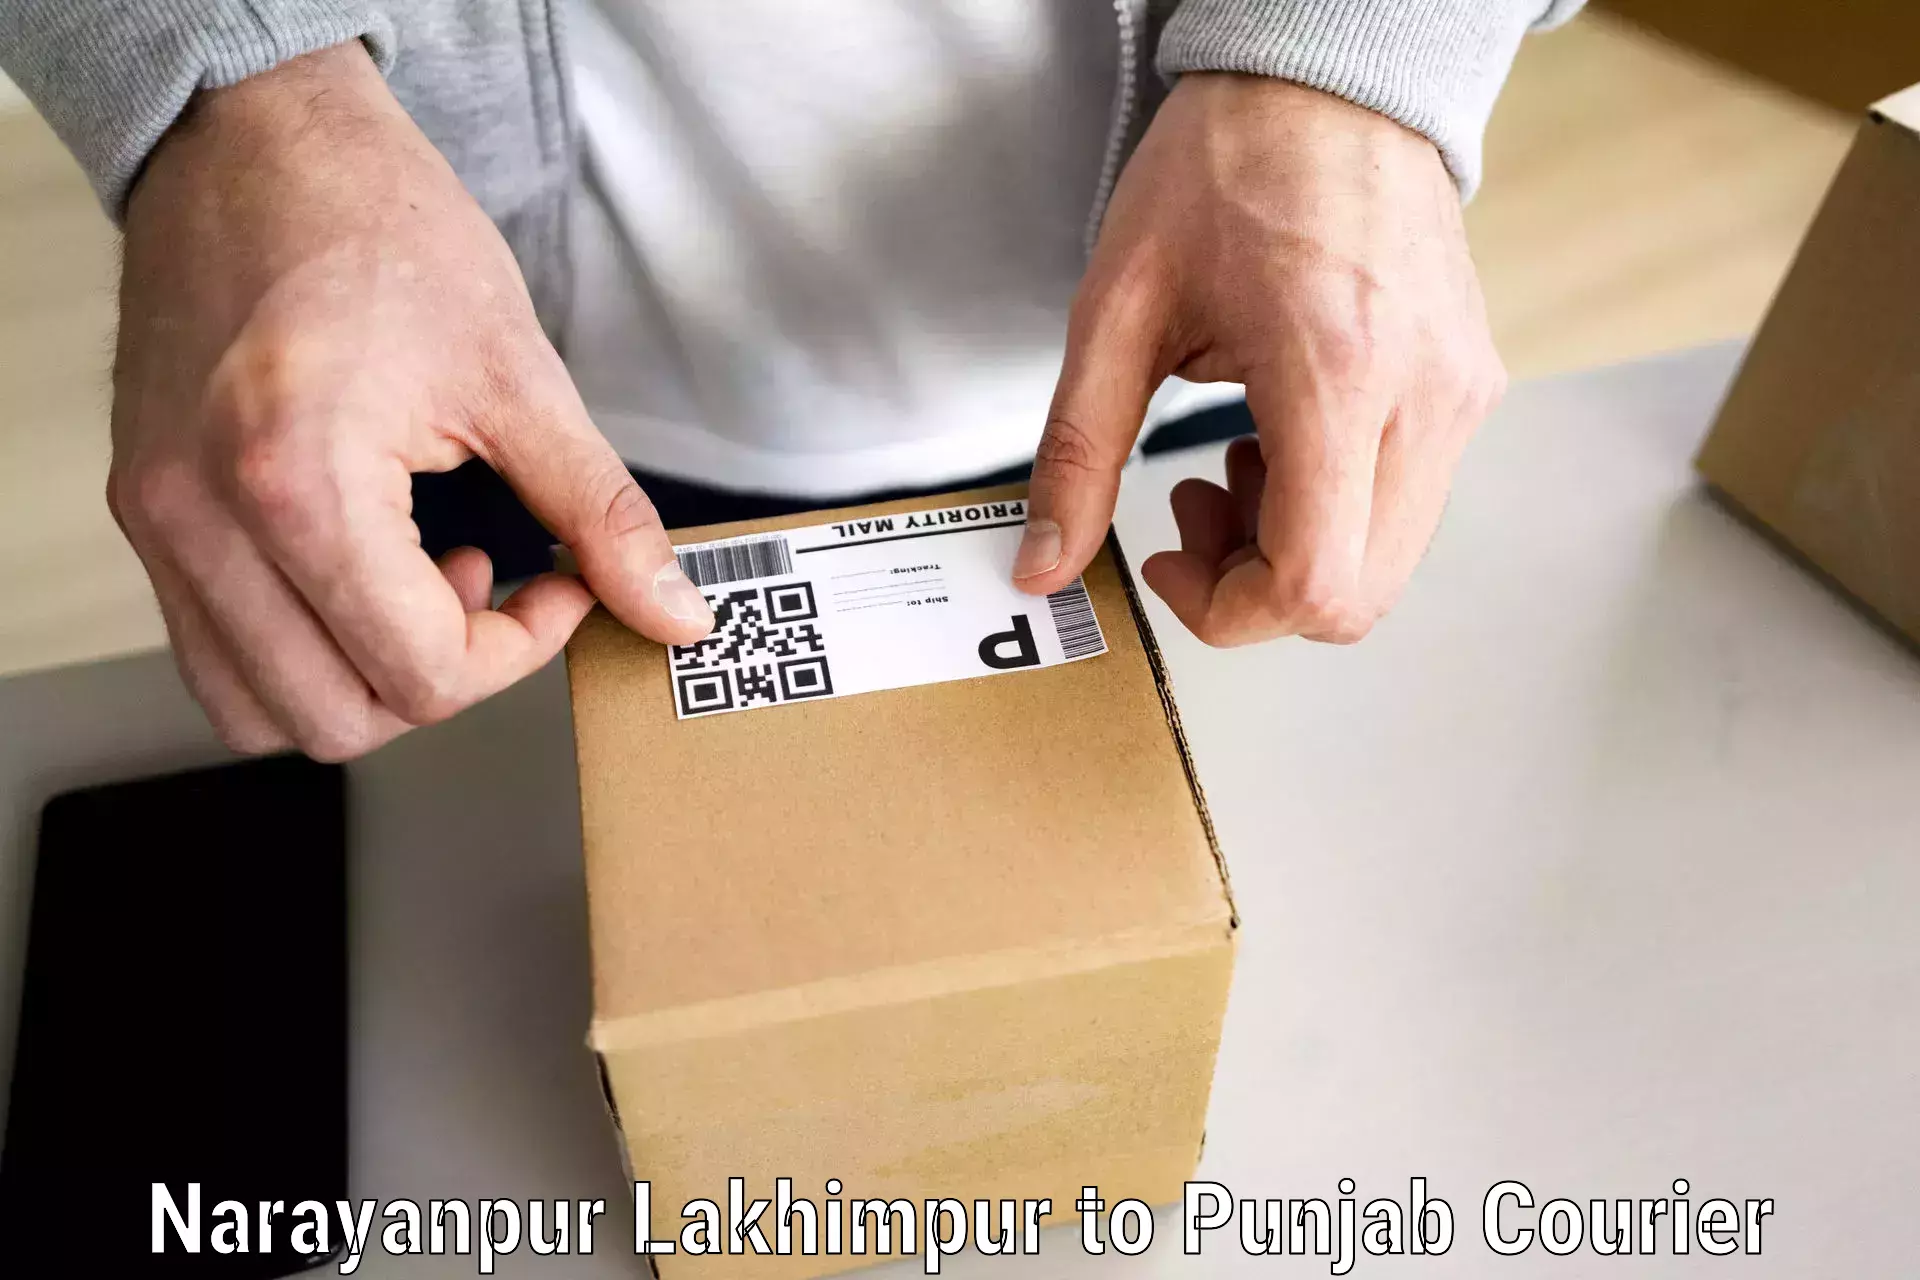 Furniture moving experts Narayanpur Lakhimpur to Malerkotla